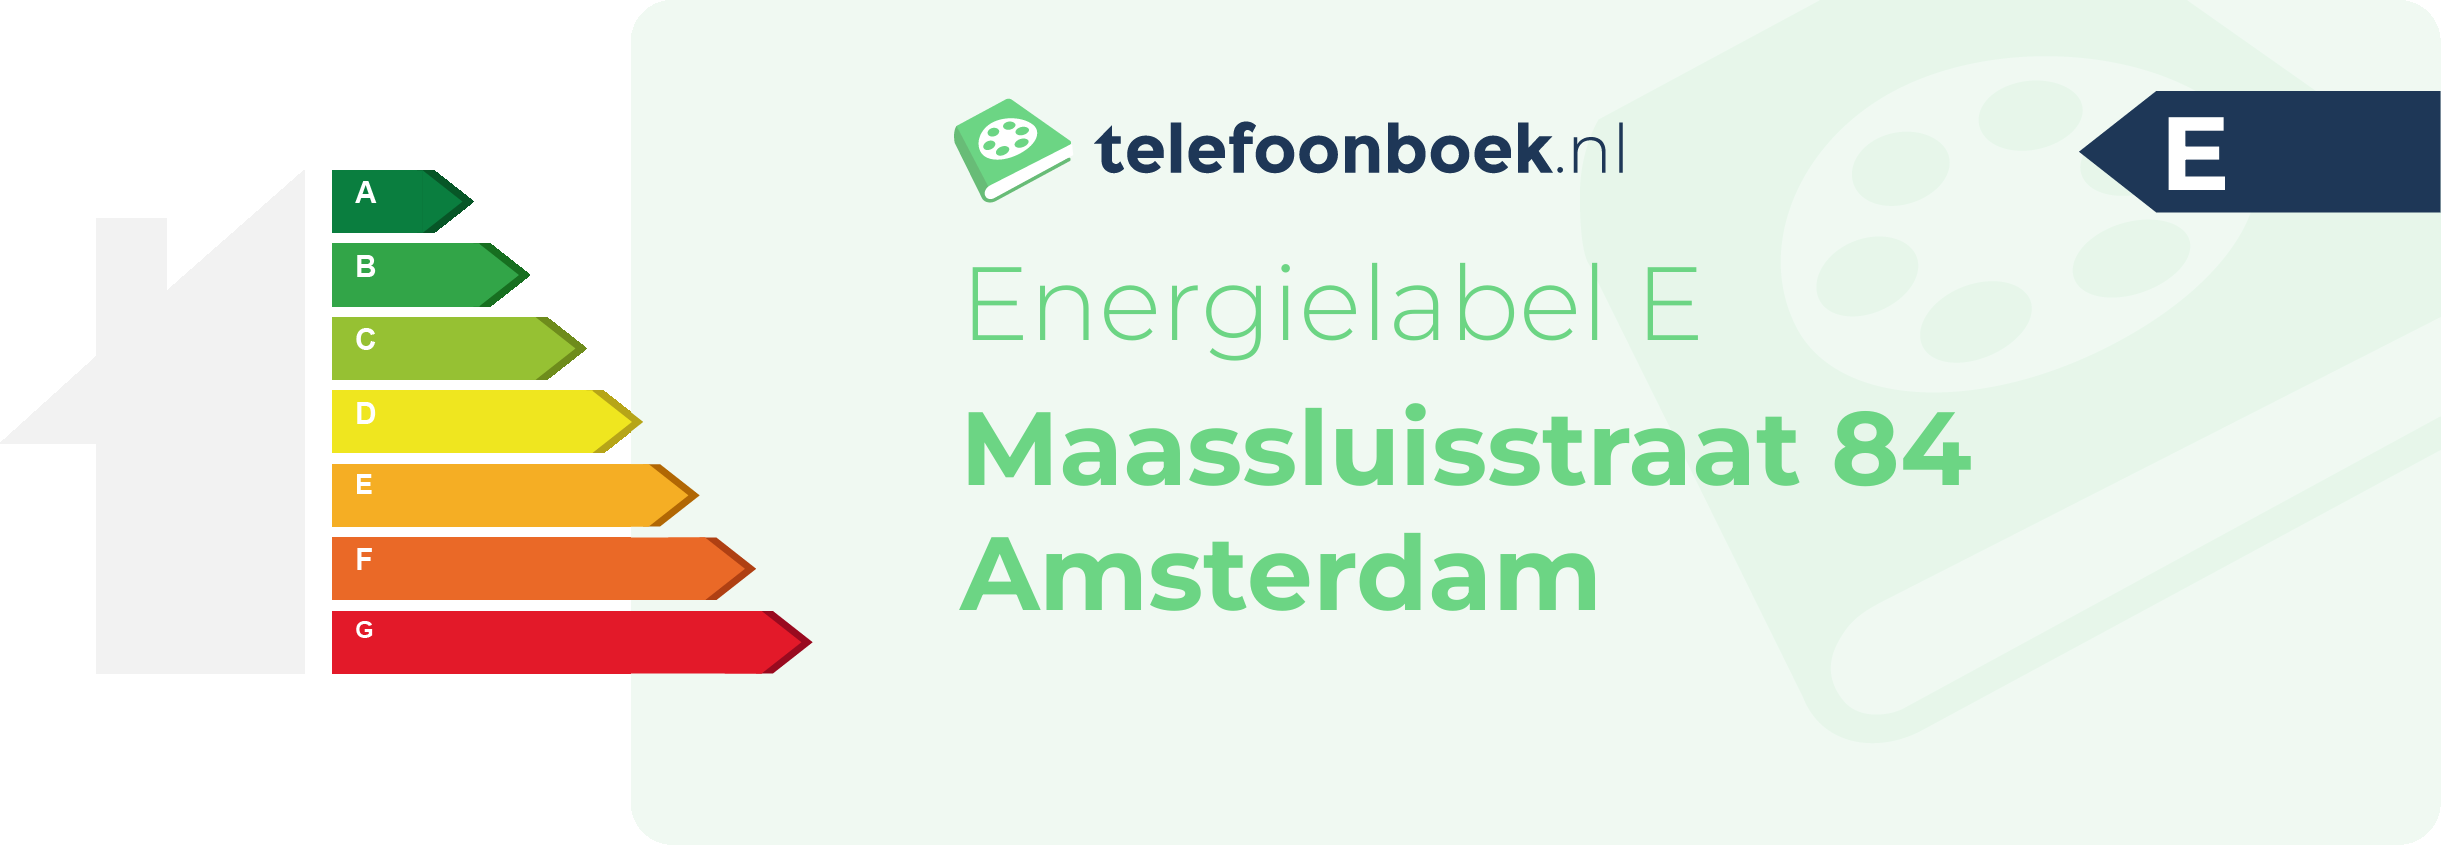 Energielabel Maassluisstraat 84 Amsterdam